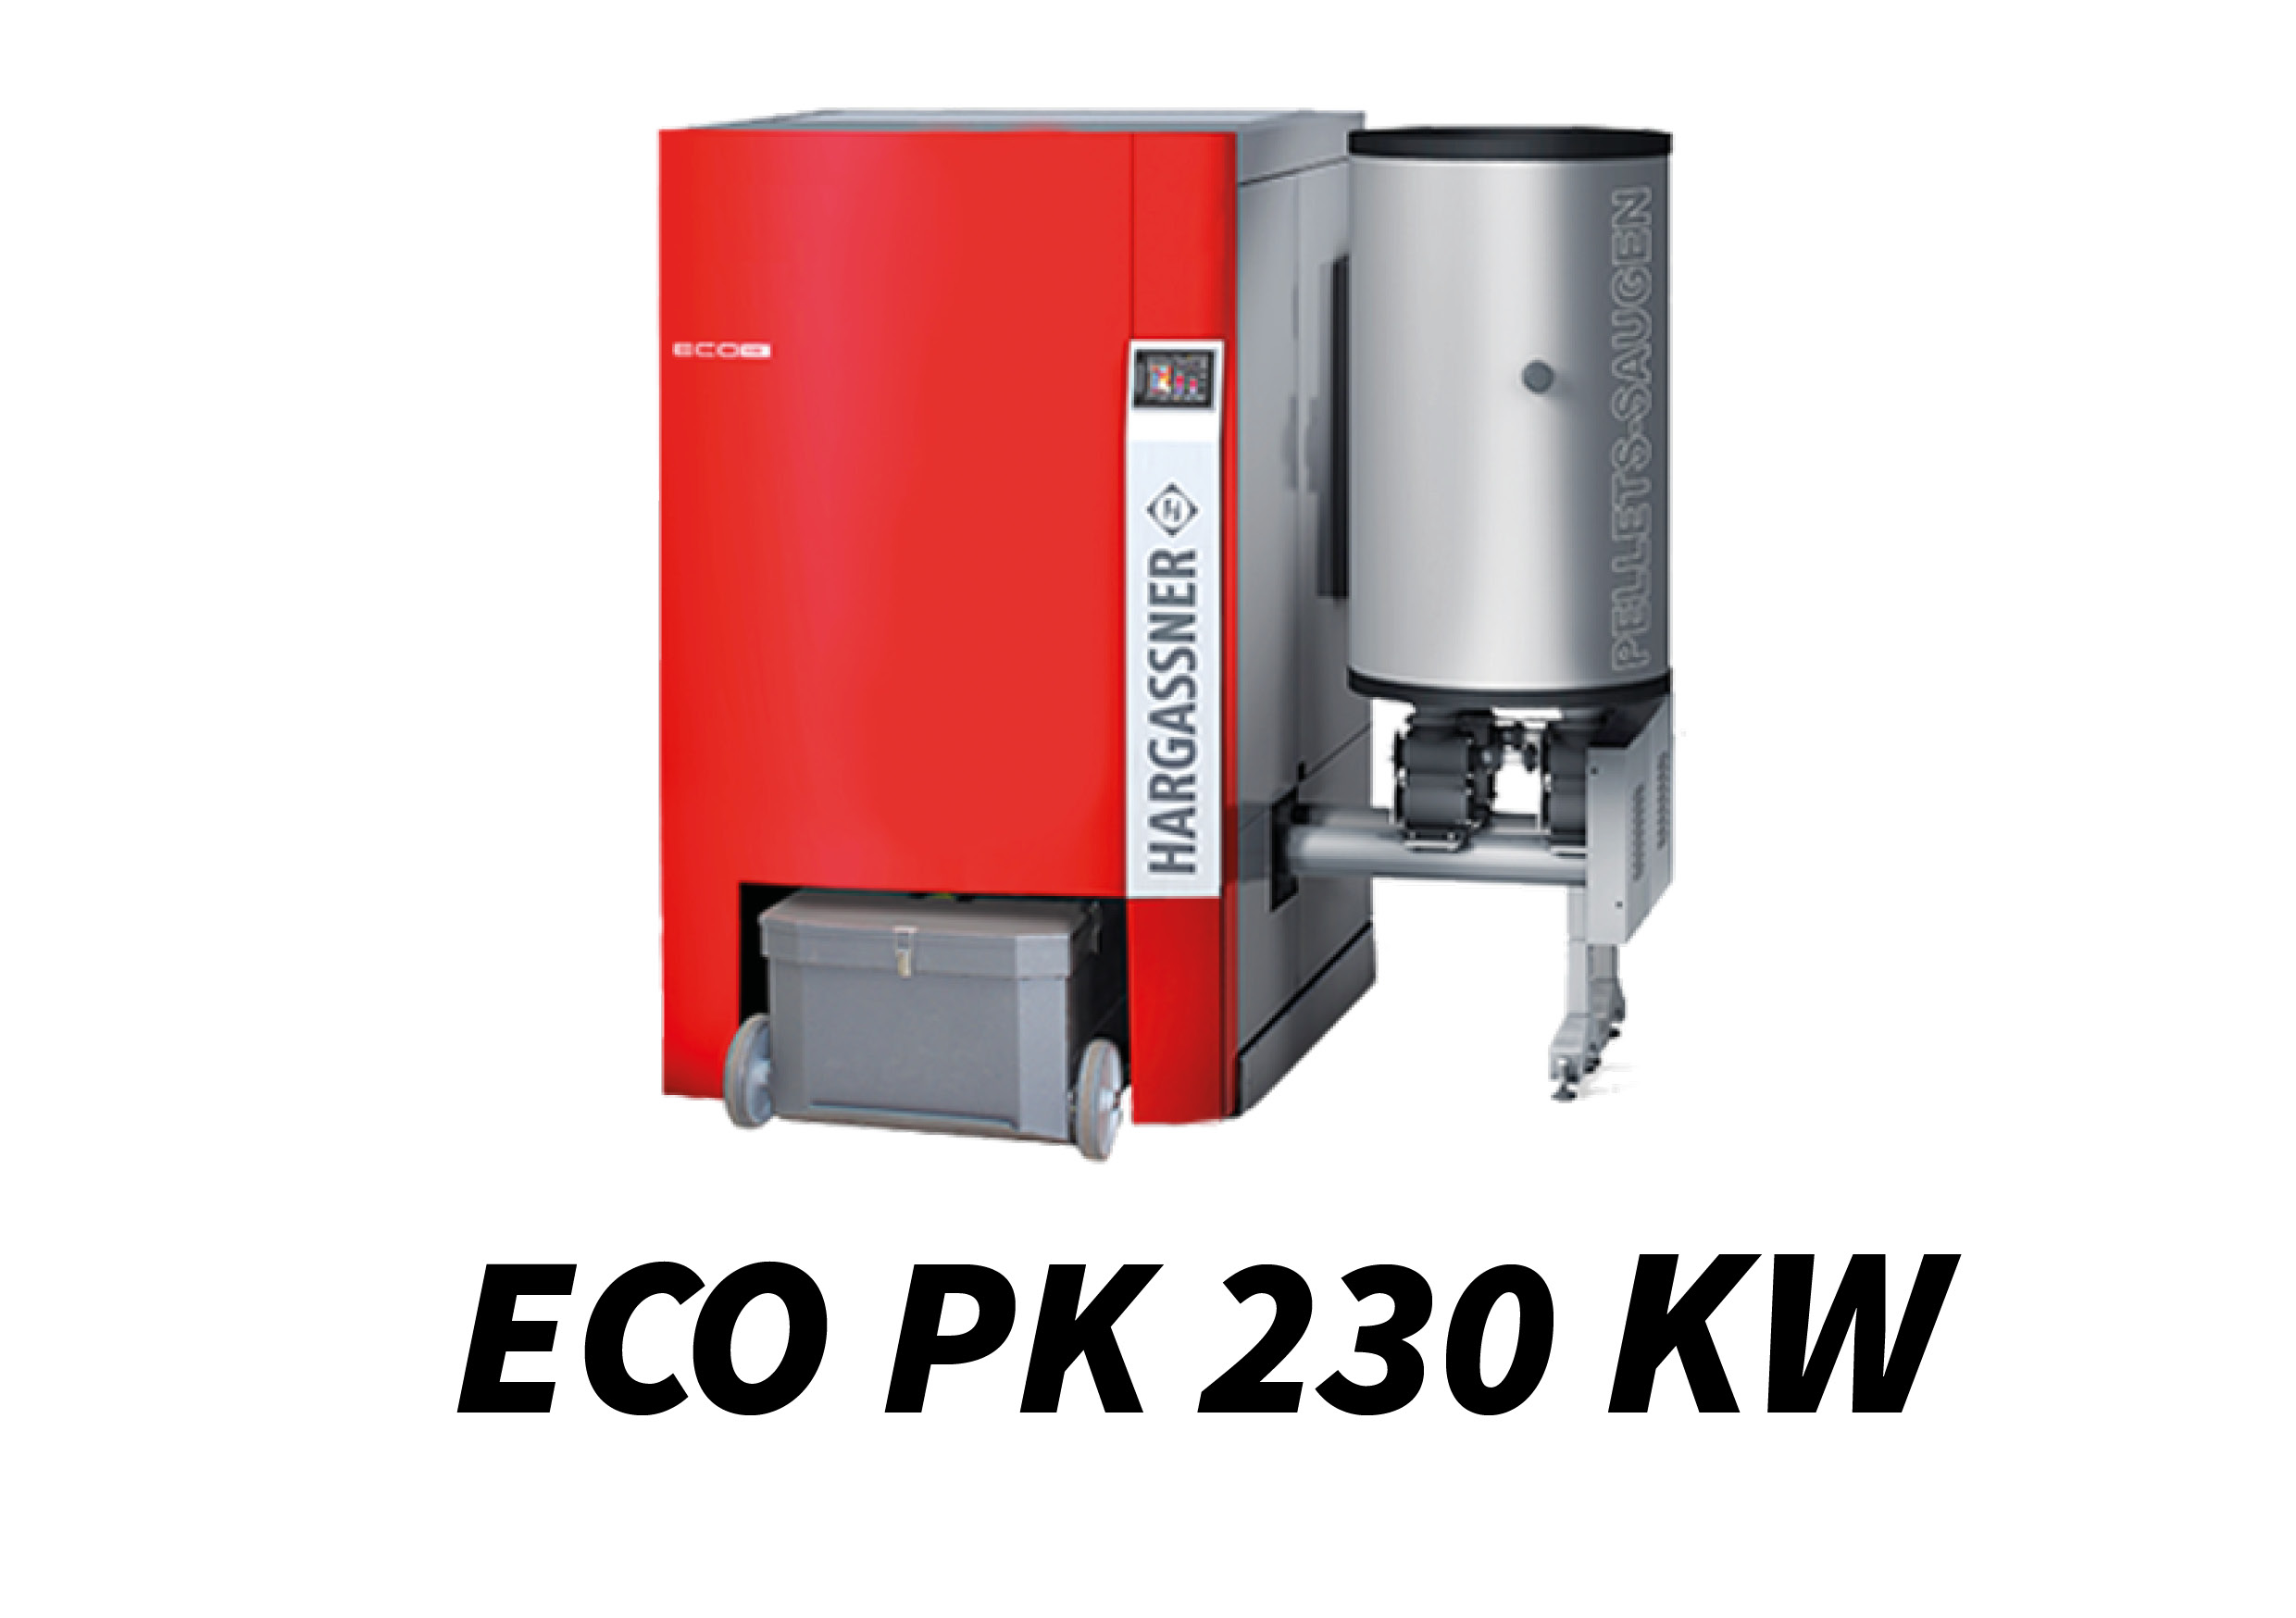 ECO PK 230 kW